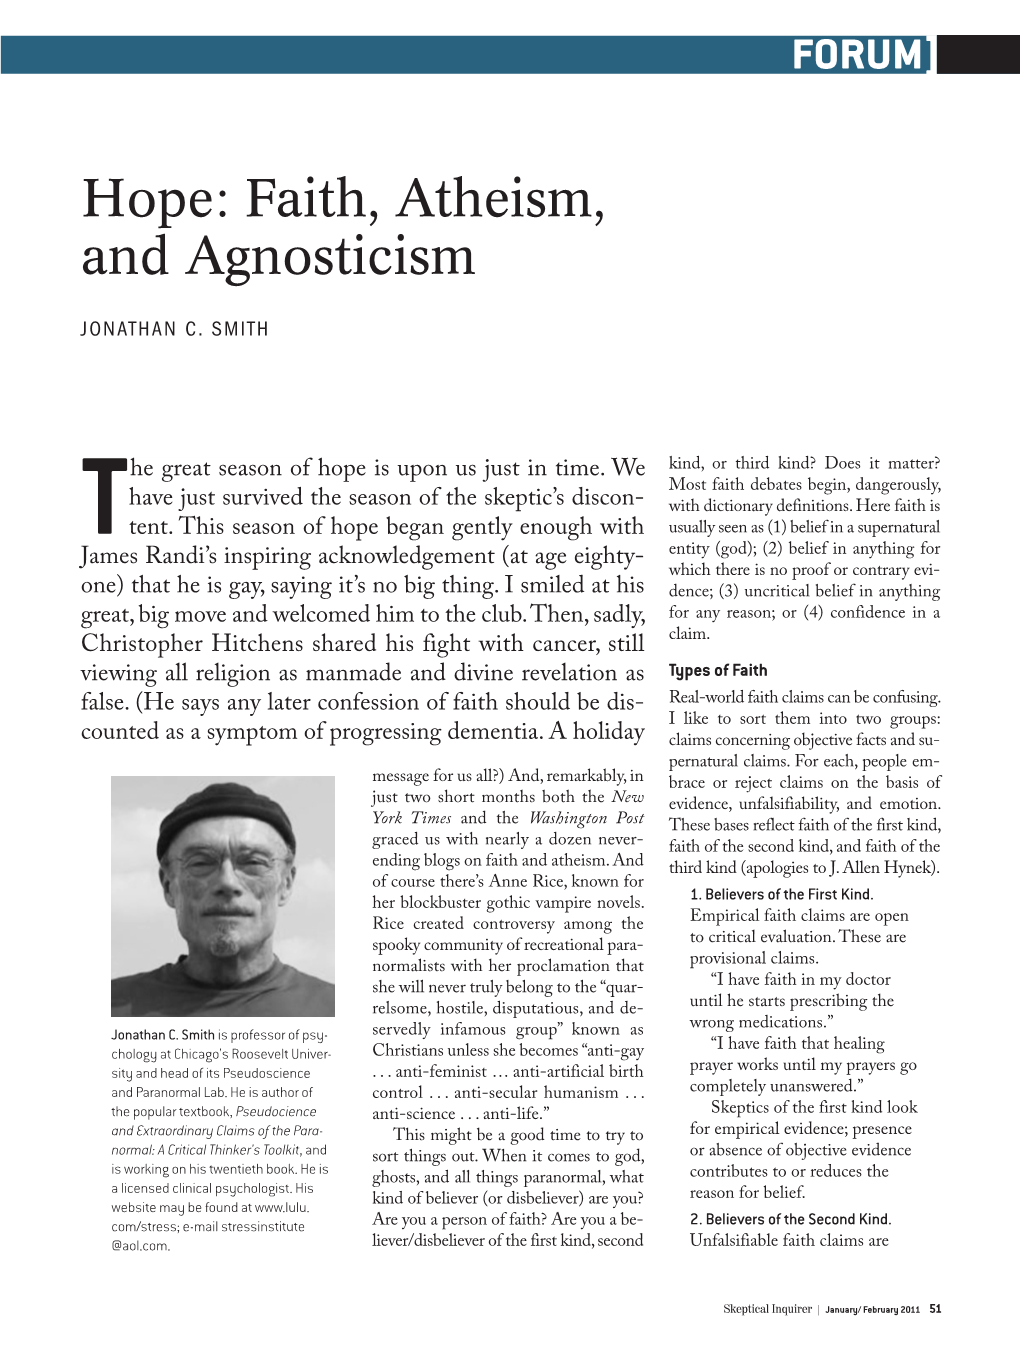 Hope: Faith, Atheism, and Agnosticism